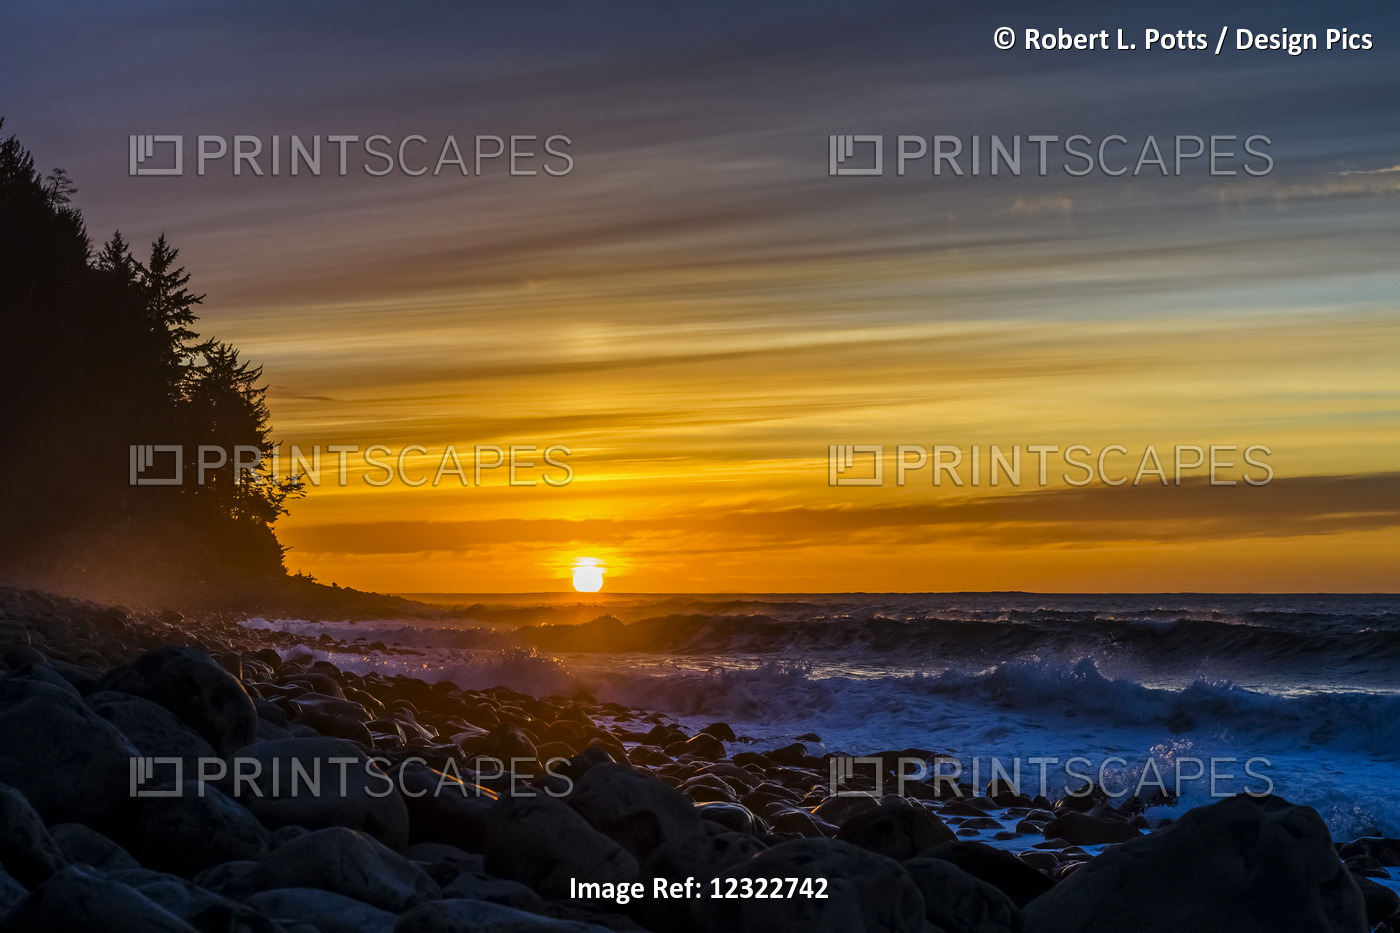 The Sun Sets Over The Ocean On The Oregon Coast; Seaside, Oregon, United States ...